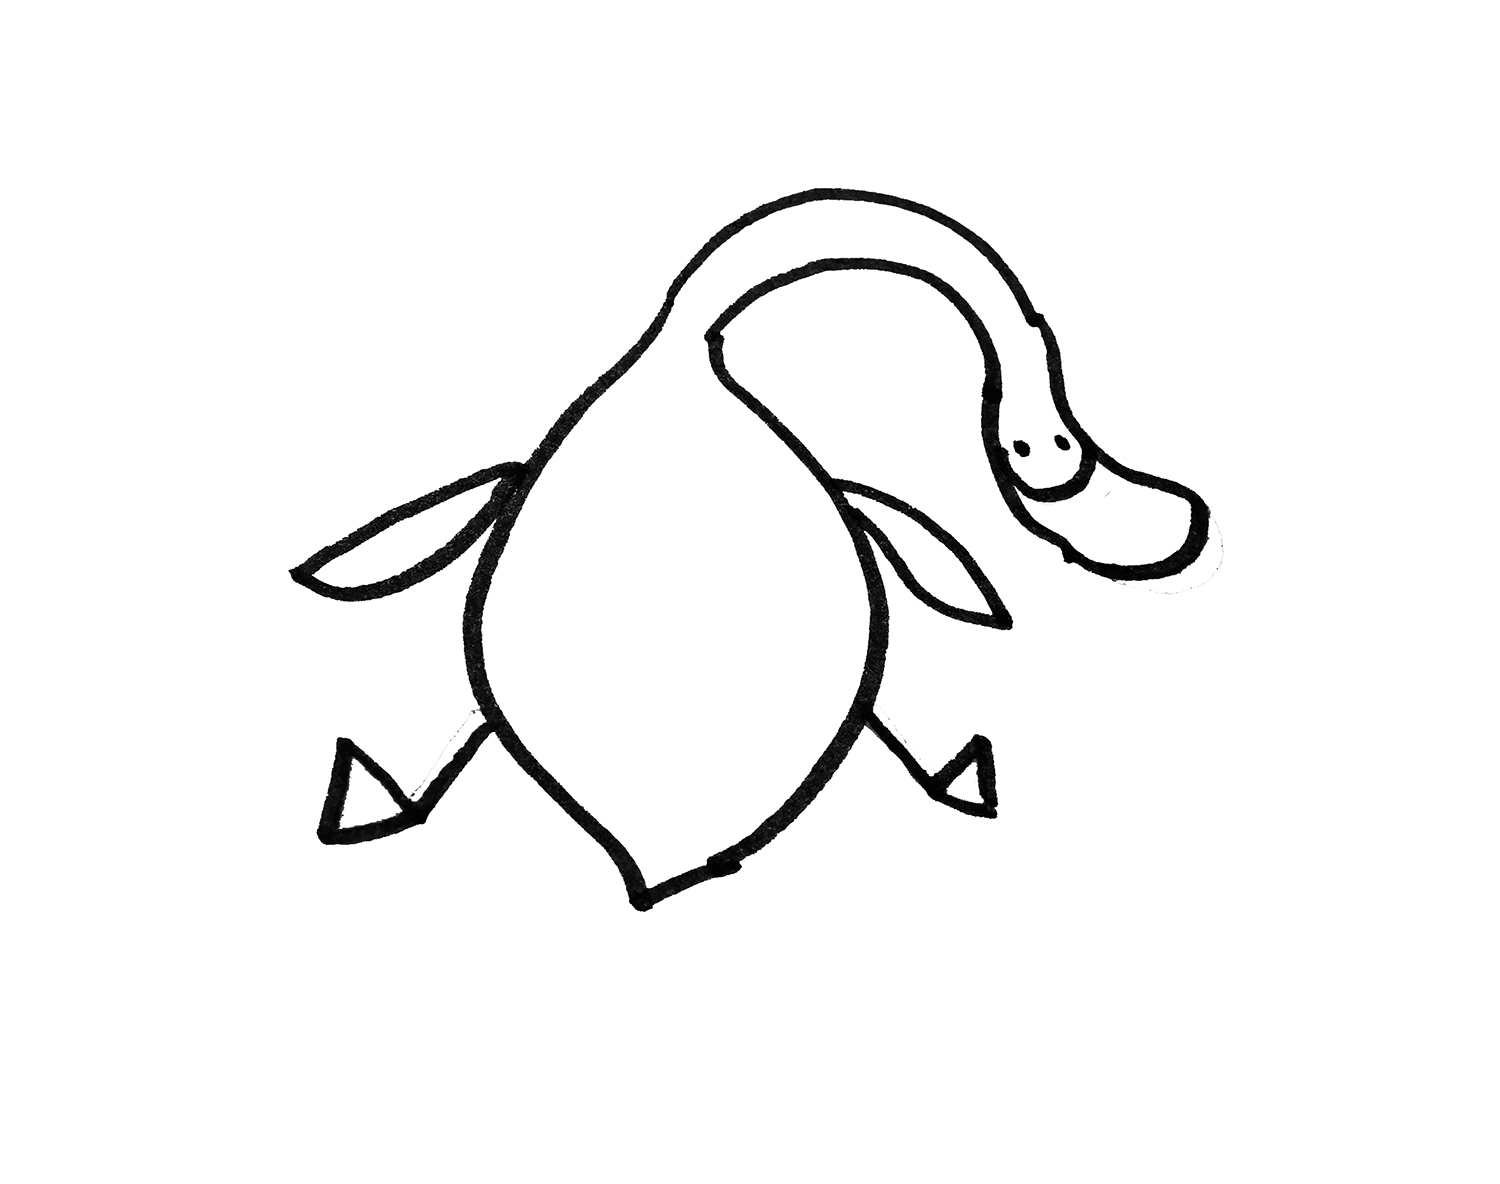 教你画色彩小鸭子的画法步骤教程 可爱简笔画